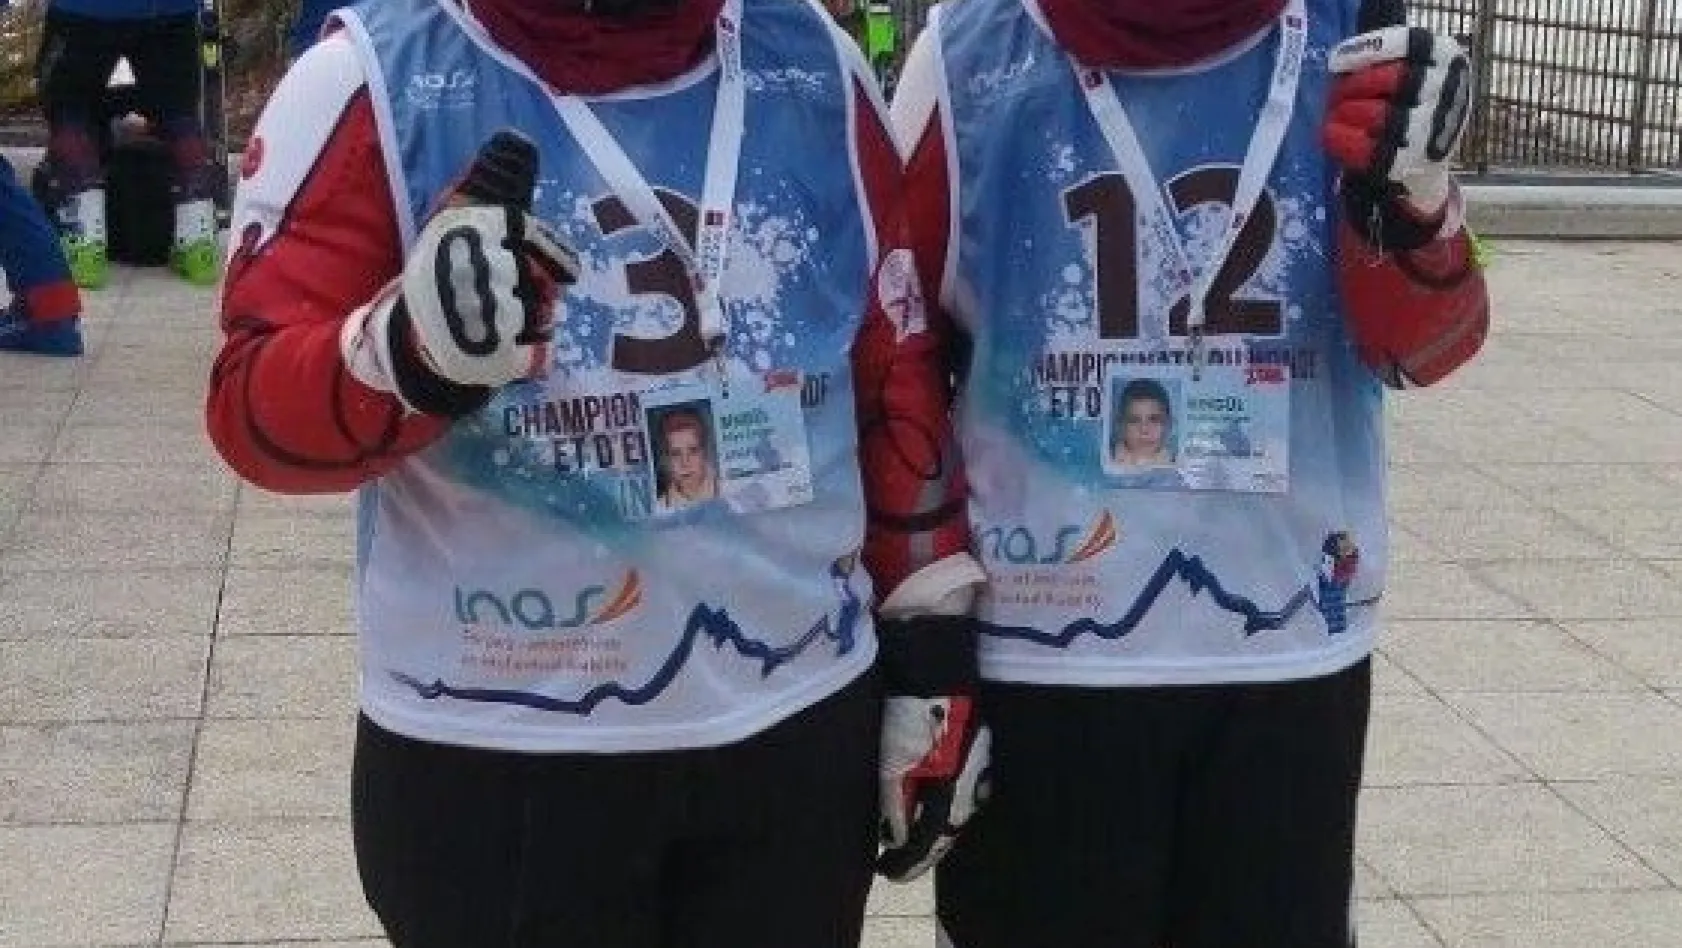 Otizmli ikiz kayakçılar büyük başarı elde etti
